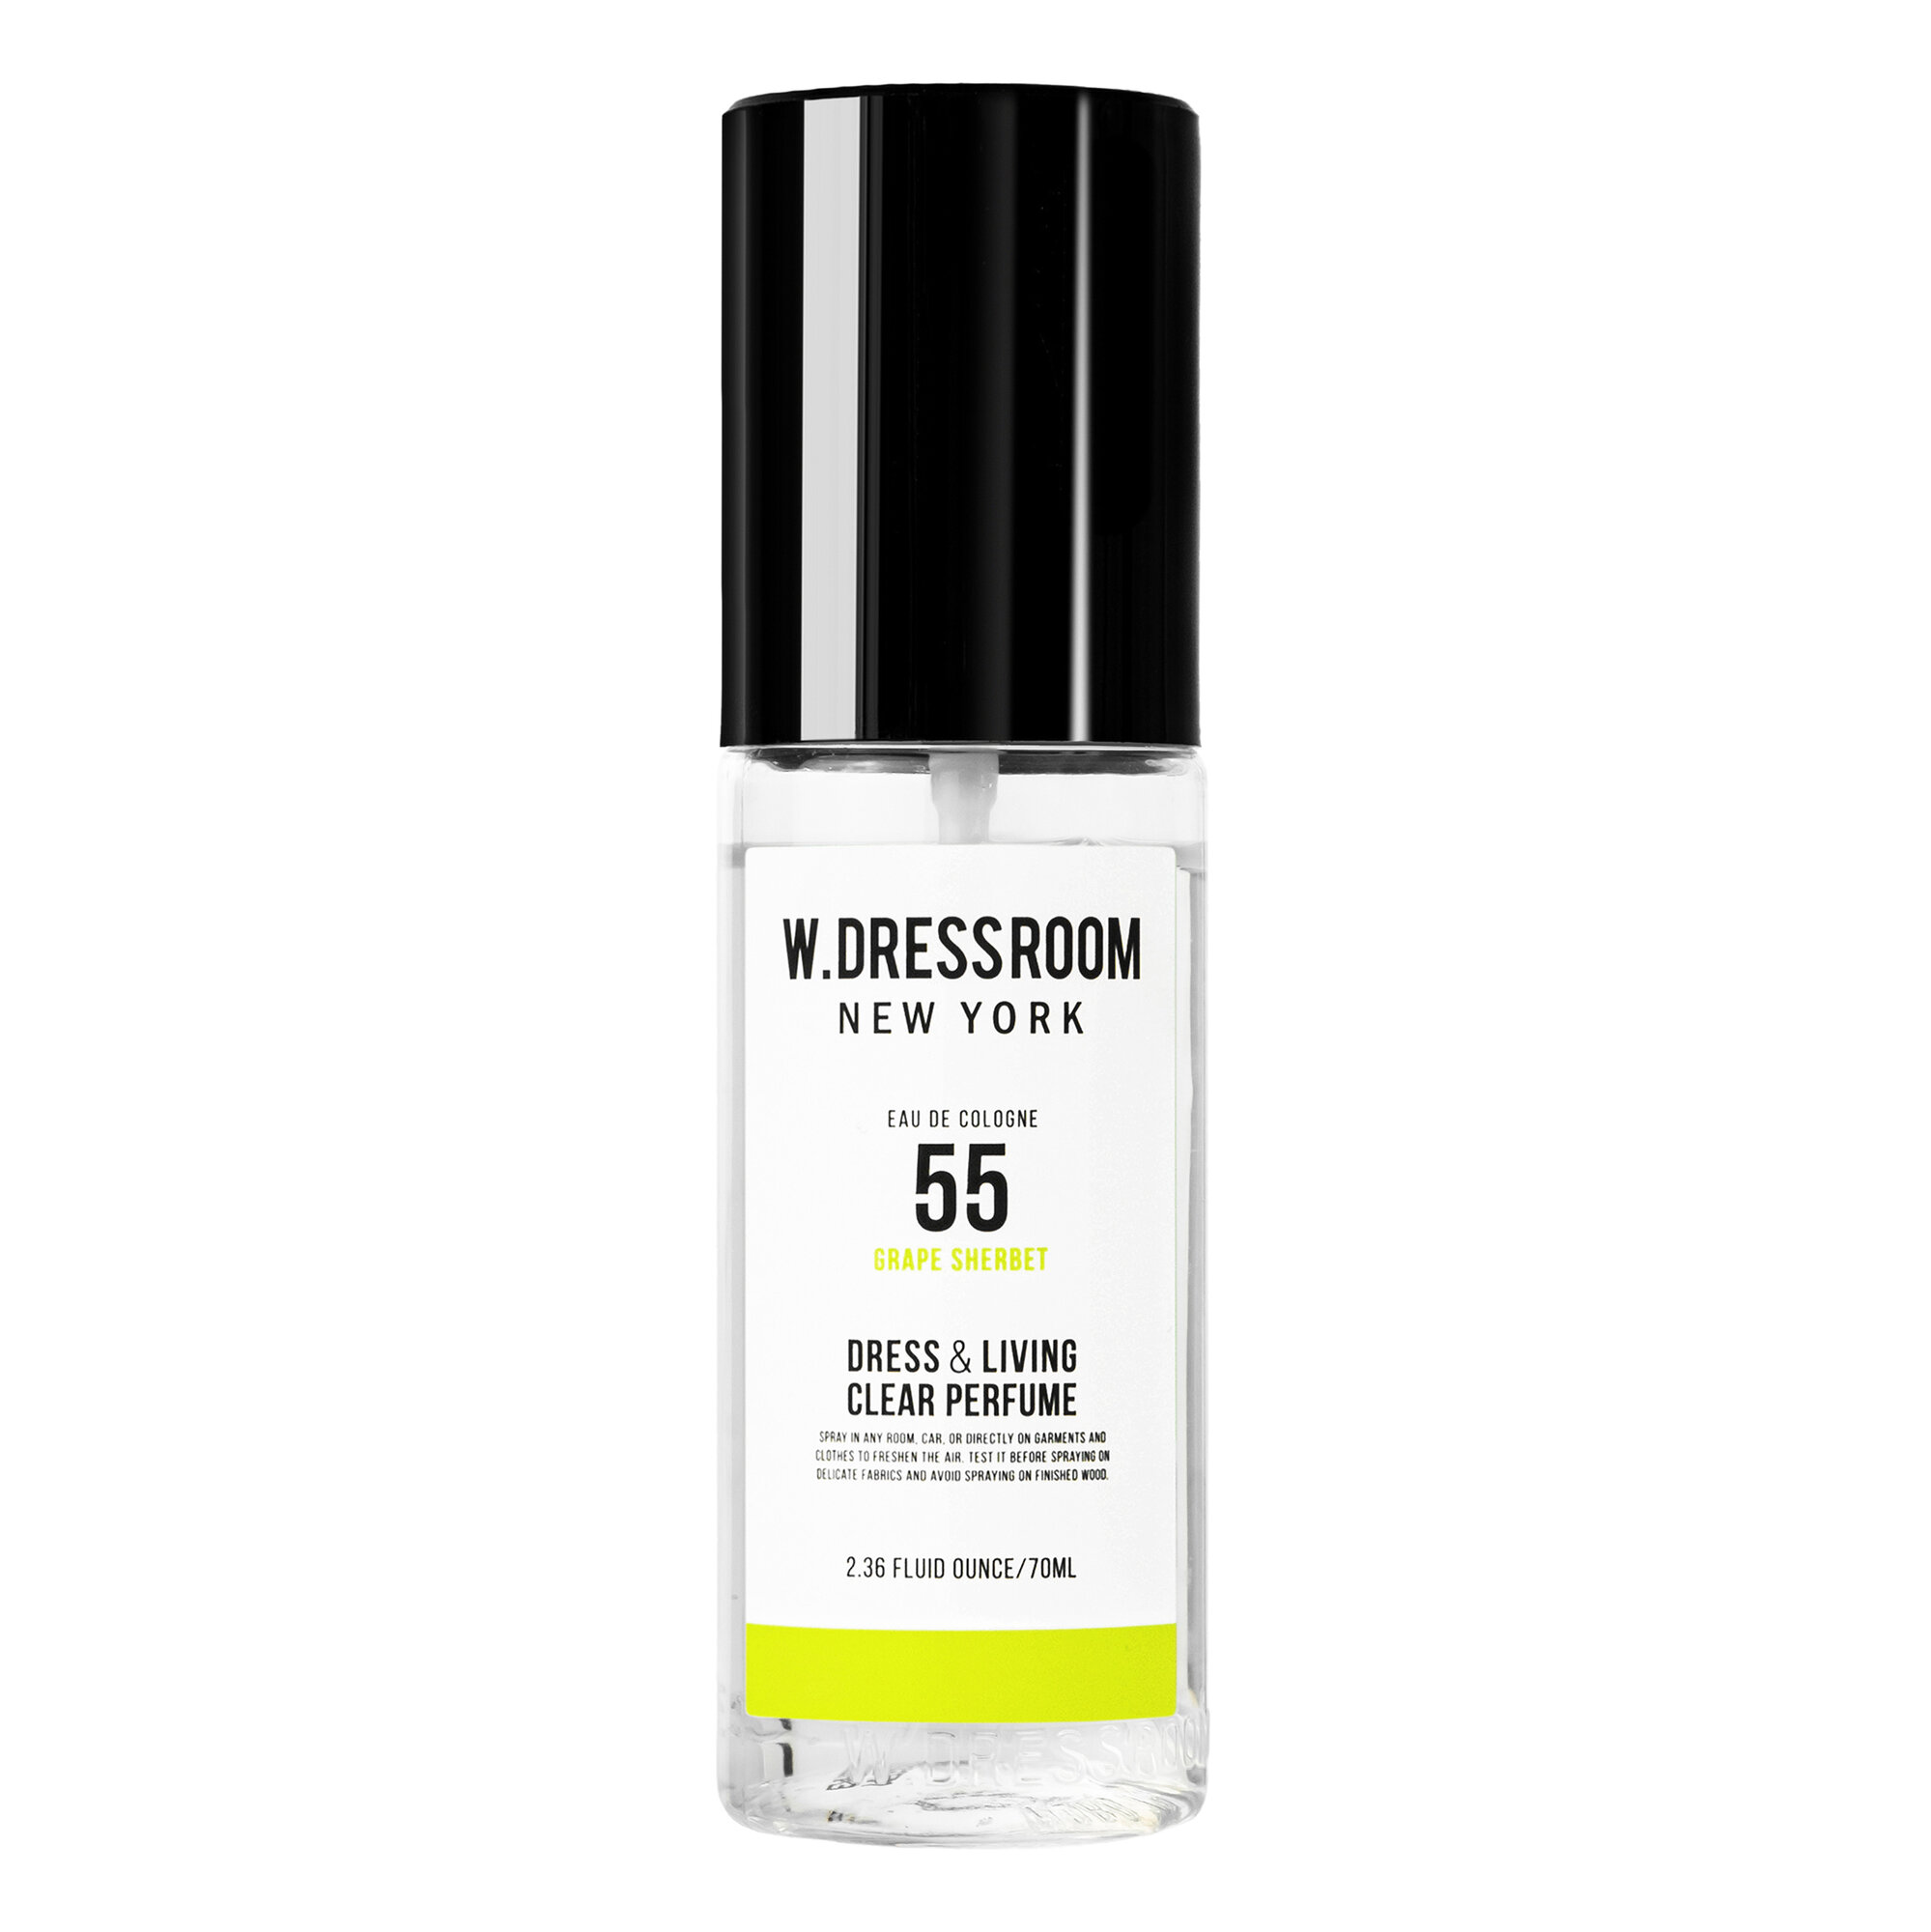 Парфюмированная вода W.Dressroom Dress & Living Clear Perfume No.55 Green Grape Sherbet 70 ml